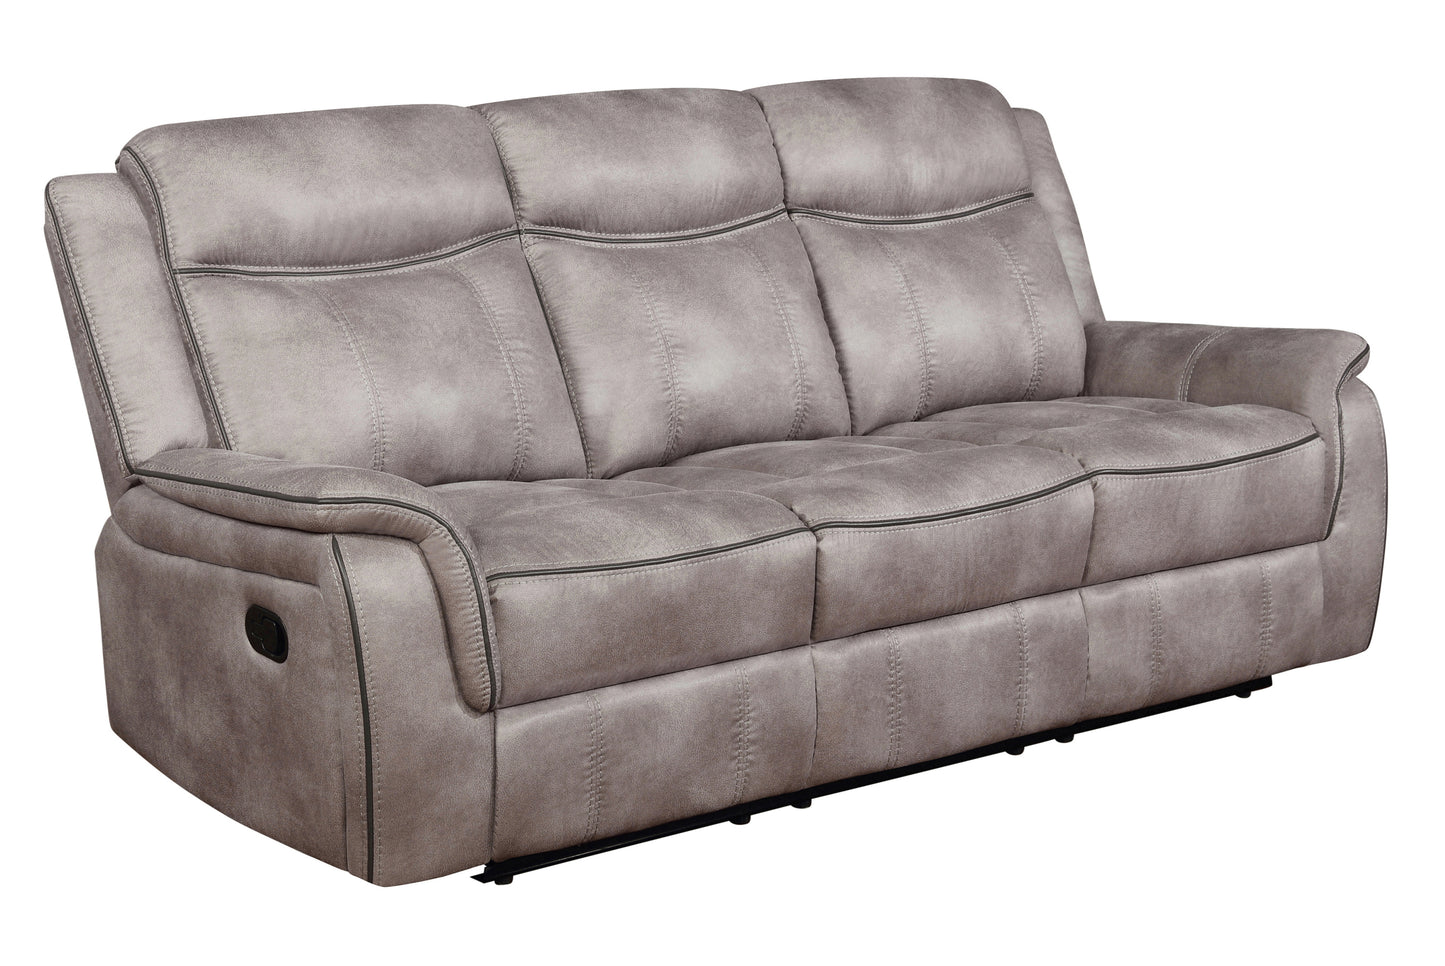 Lawrence Upholstered Tufted Living Room Set - 603501